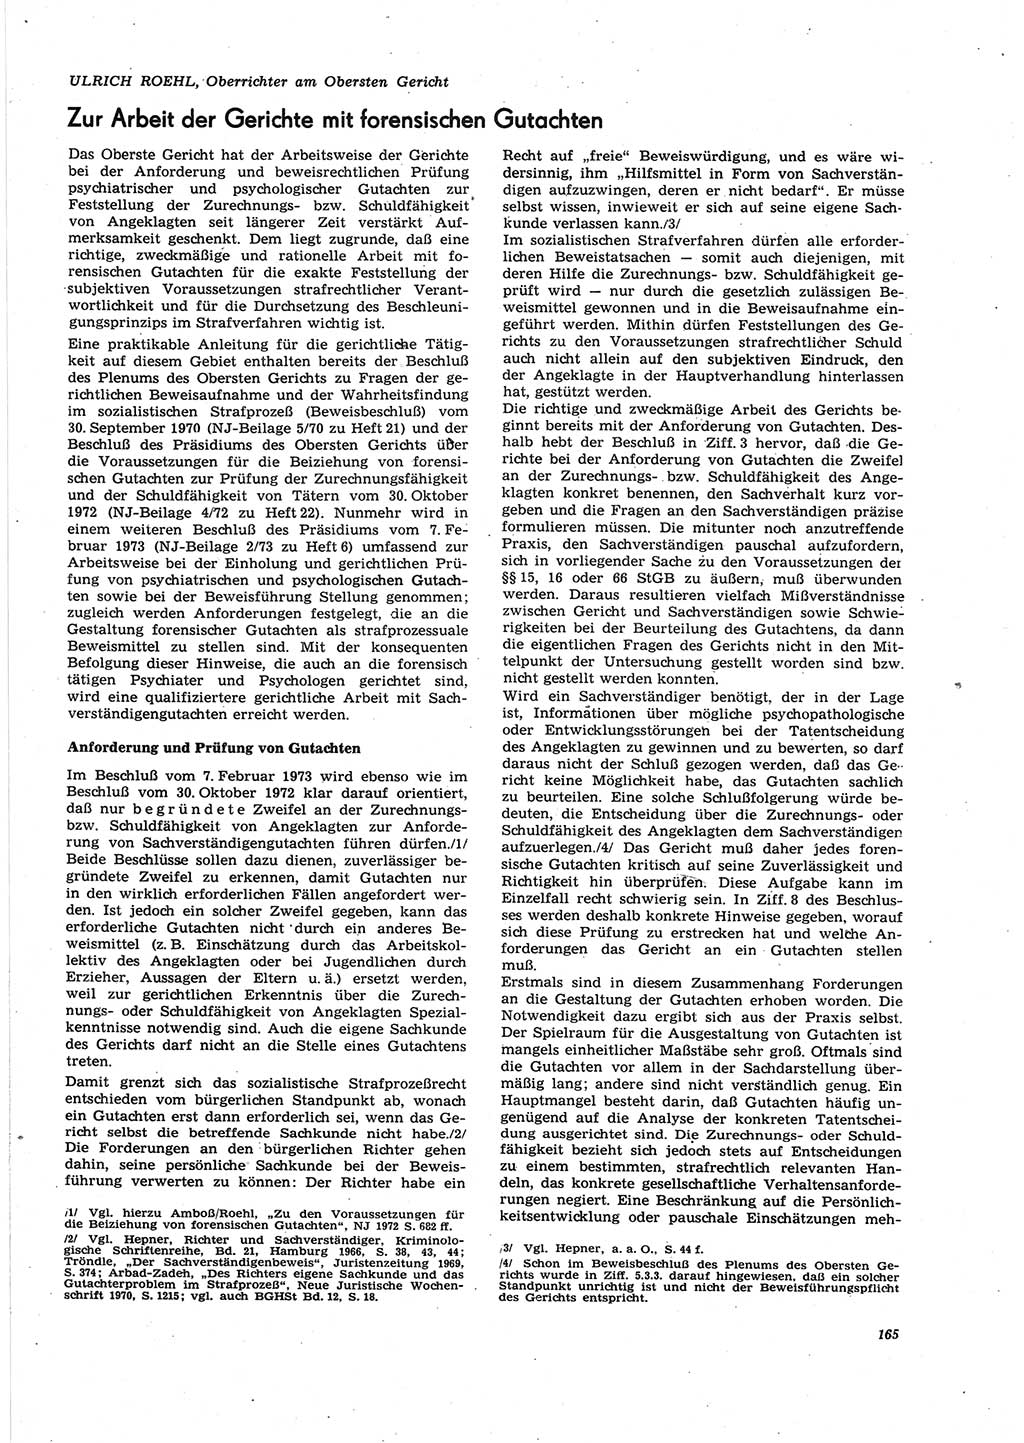 Neue Justiz (NJ), Zeitschrift für Recht und Rechtswissenschaft [Deutsche Demokratische Republik (DDR)], 27. Jahrgang 1973, Seite 165 (NJ DDR 1973, S. 165)